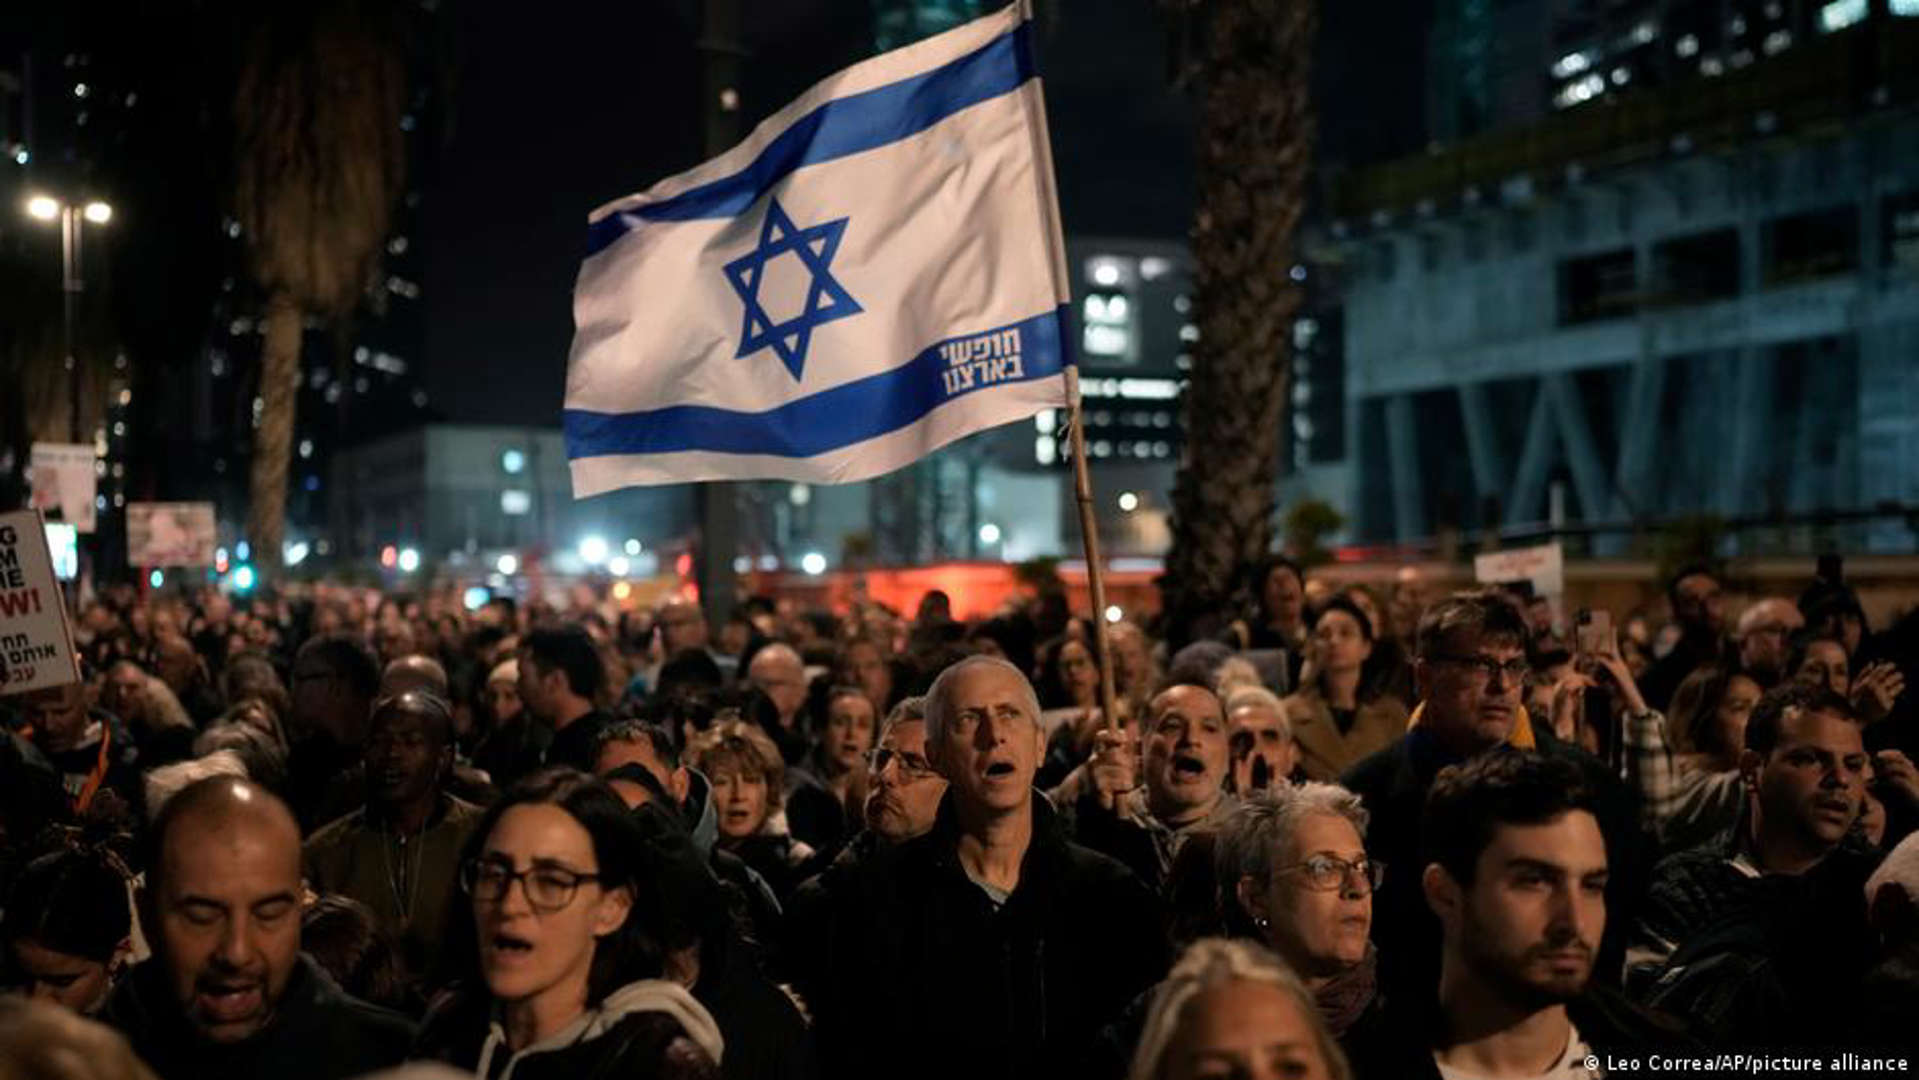 صورة من: Leo Correa/AP/picture alliance - في تل أبيب - إسرائيليون يطالبون بإطلاق سراح الرهائن. In Tel Aviv fordern erneut zahlreiche Israelis die Freilassung der Geiseln.